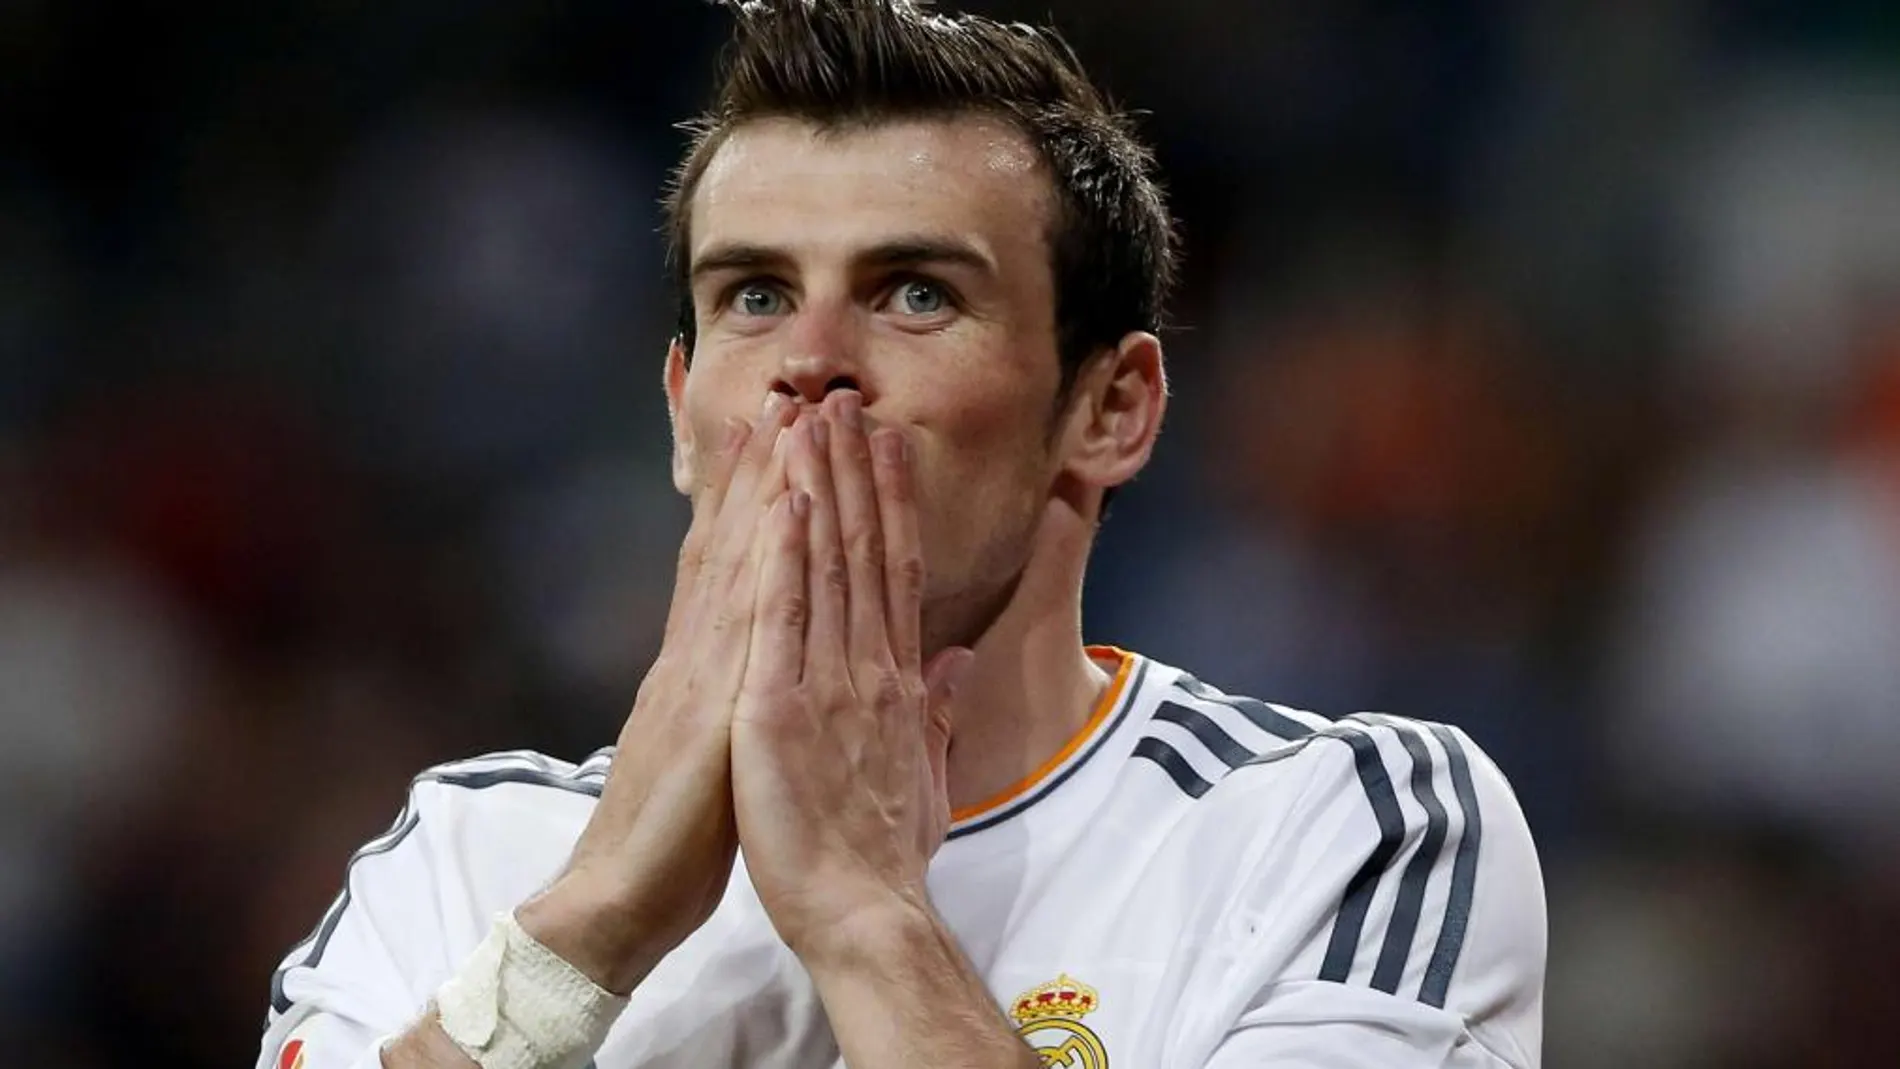 Galones para Bale